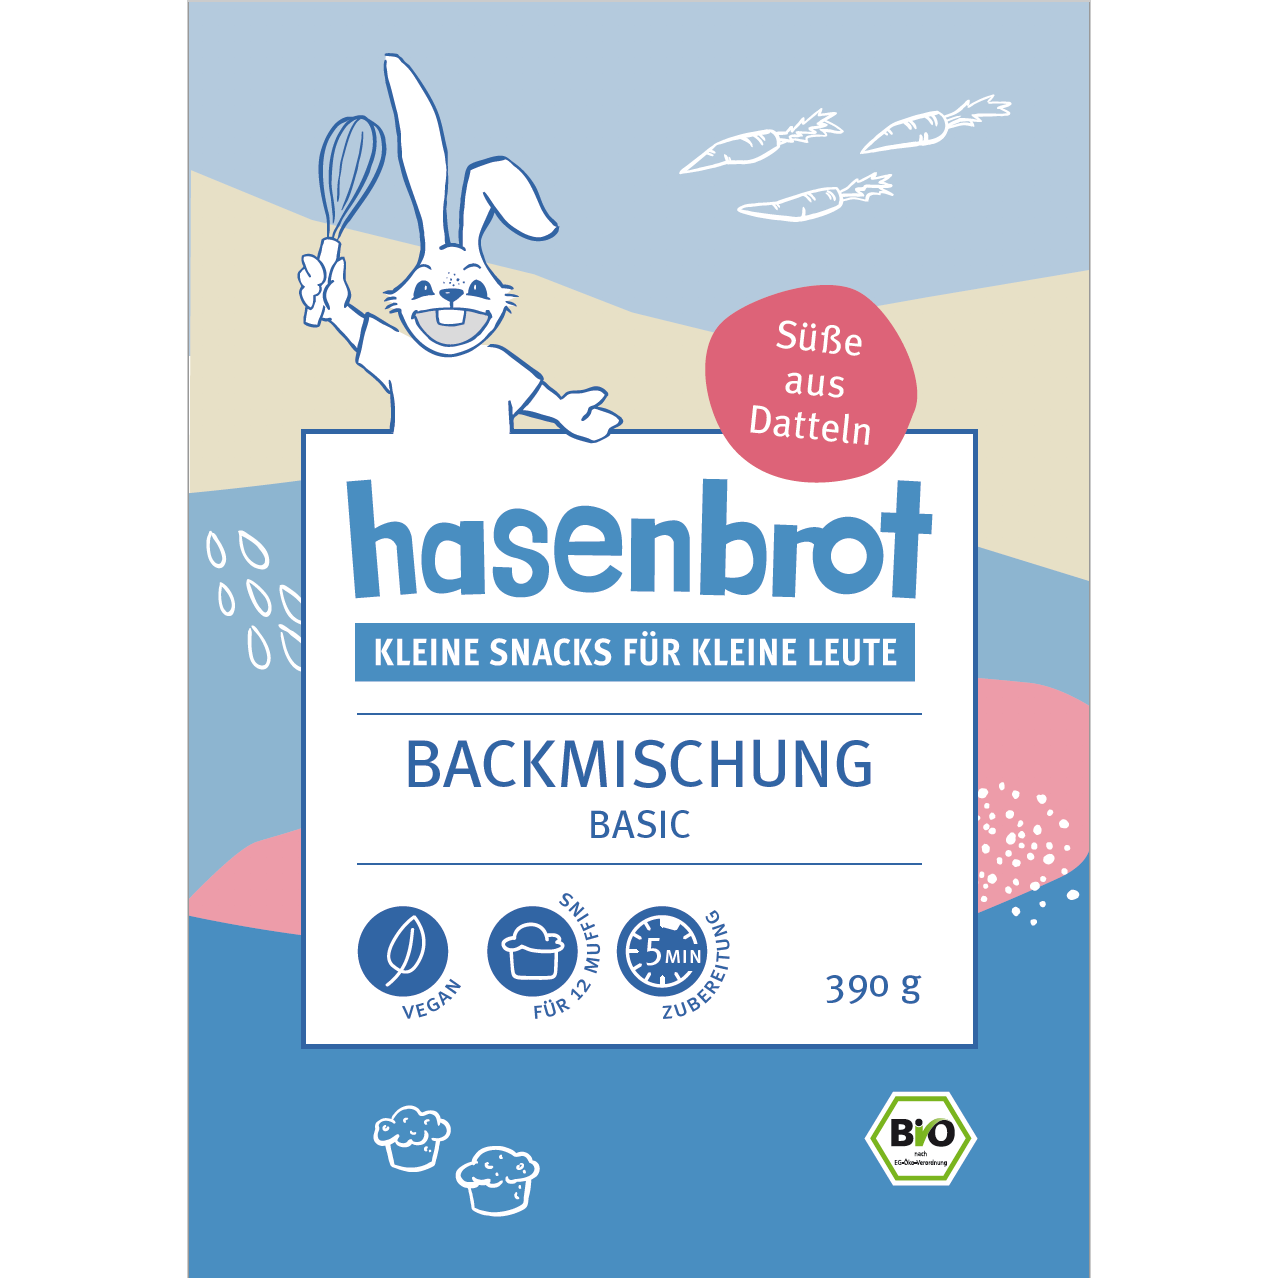 Hasenbrot_basic_Label_VS